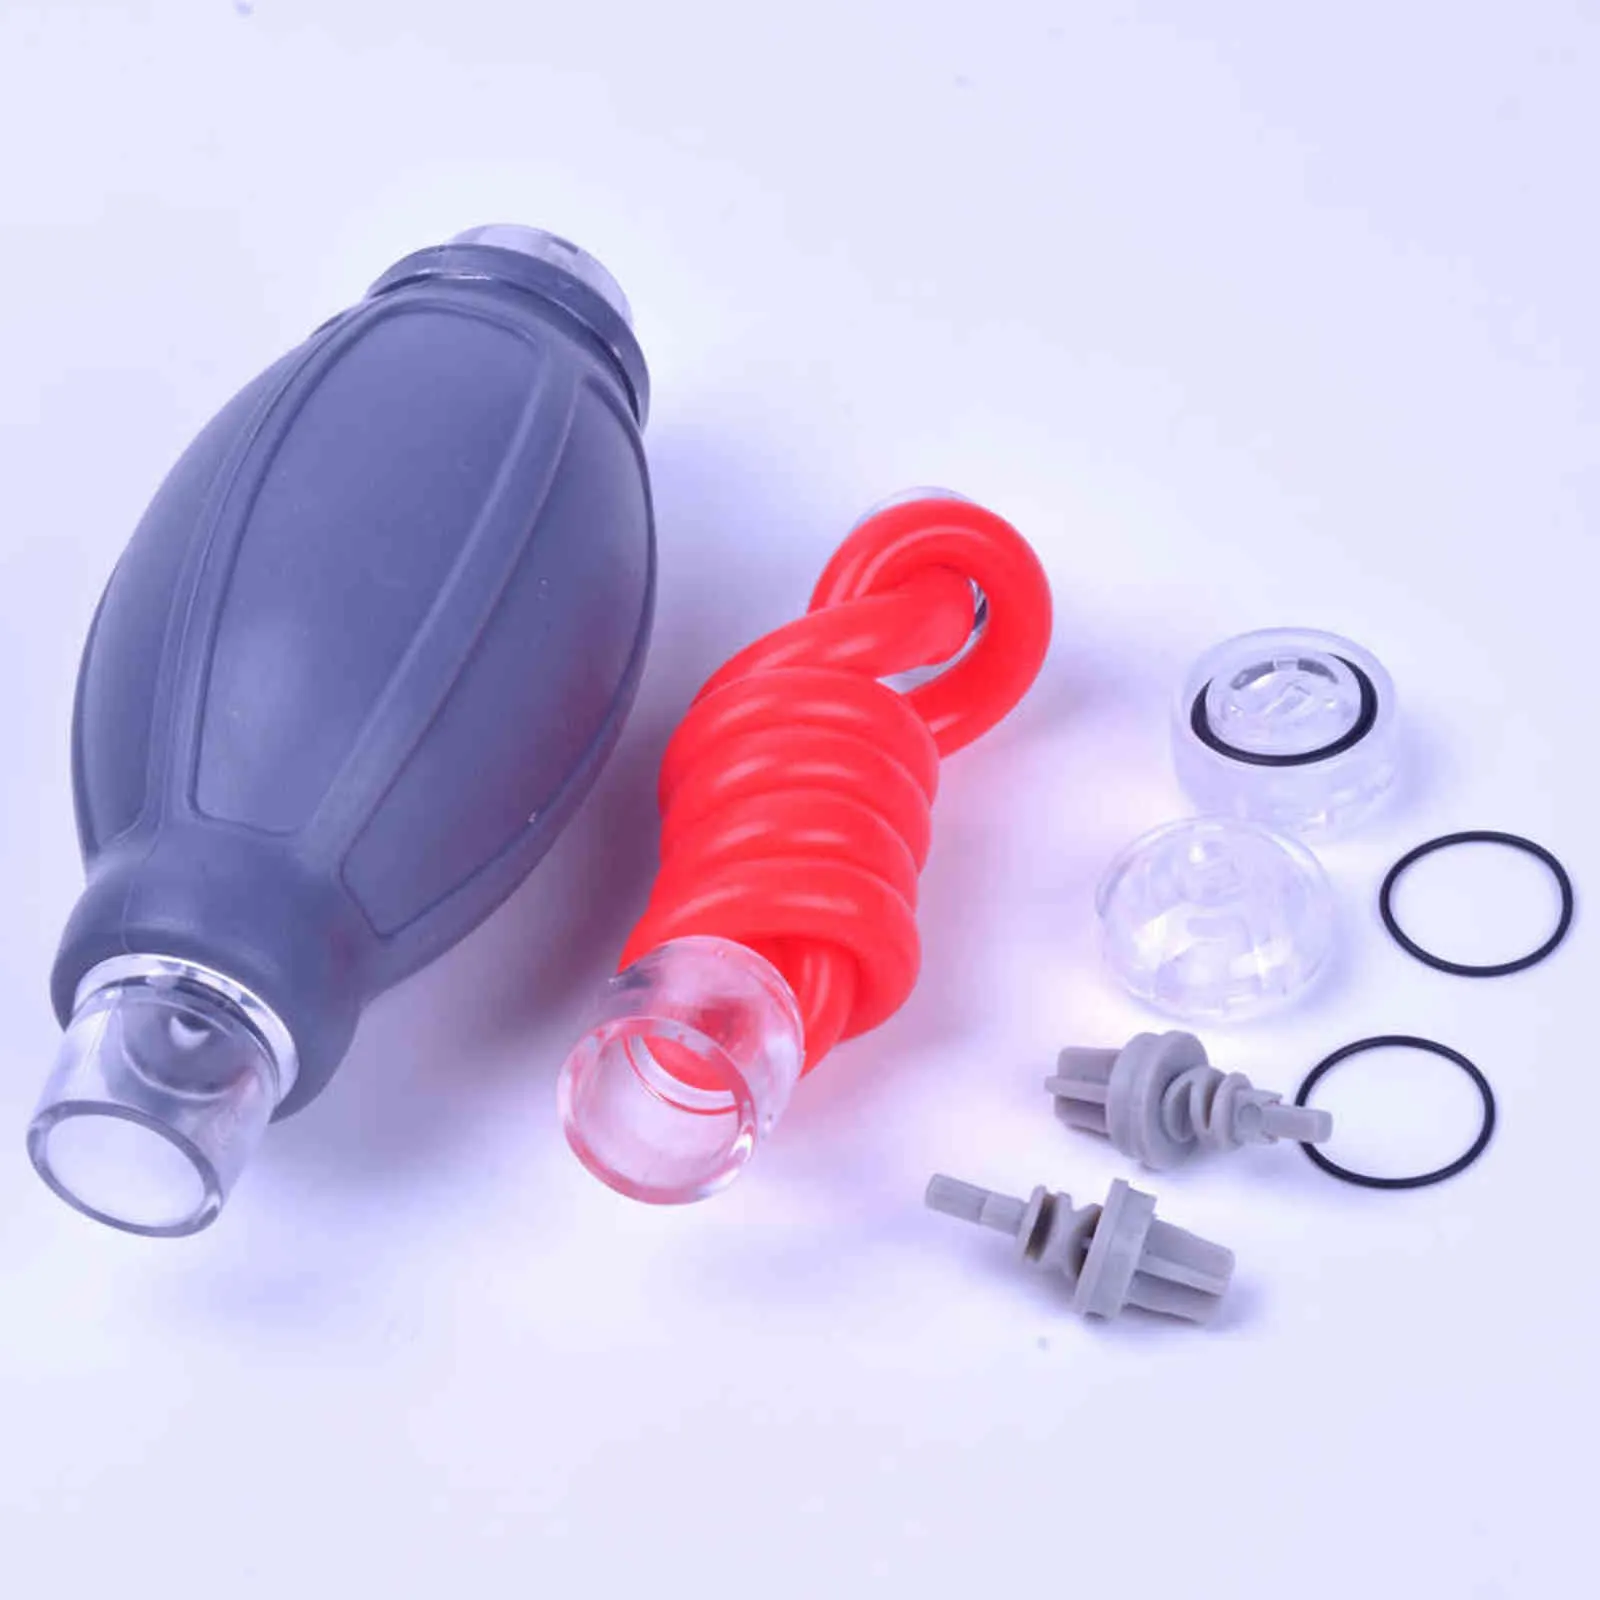 NXY Pump Pump Zabawki Penis Wodne Akcesoria dla wszystkich x20 x30 x40 x7 x9 normalne xtreme z zestawem powiększania pasa węża 18 11258843091